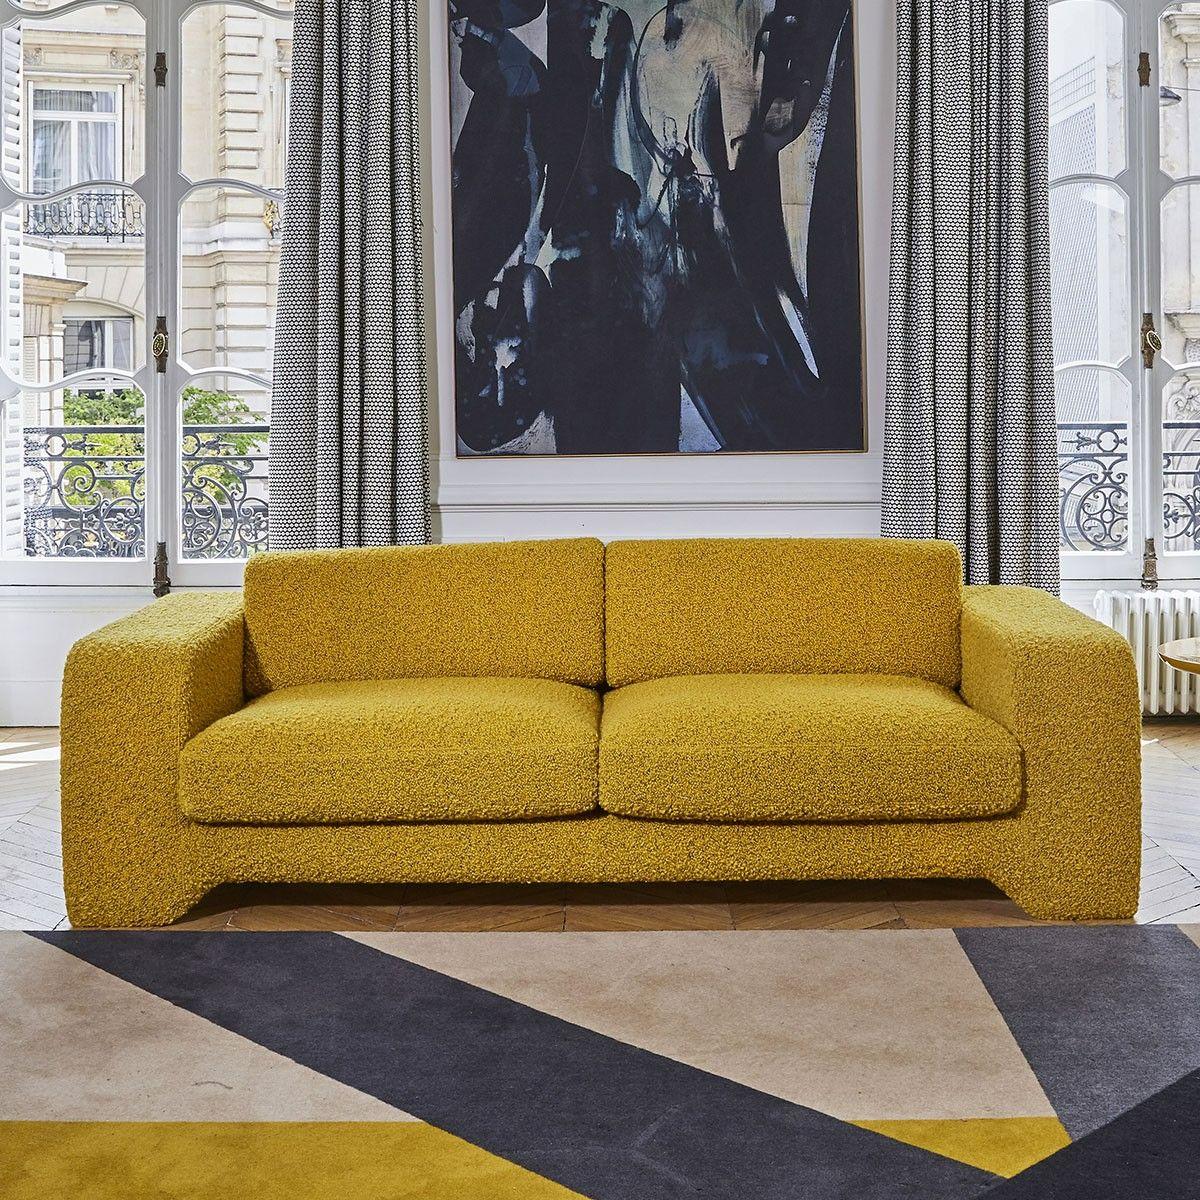 Popus Editions Giovanna 4 Seater Sofa in Ciotello Venice Chenille VelvetFabric In New Condition For Sale In Paris, FR